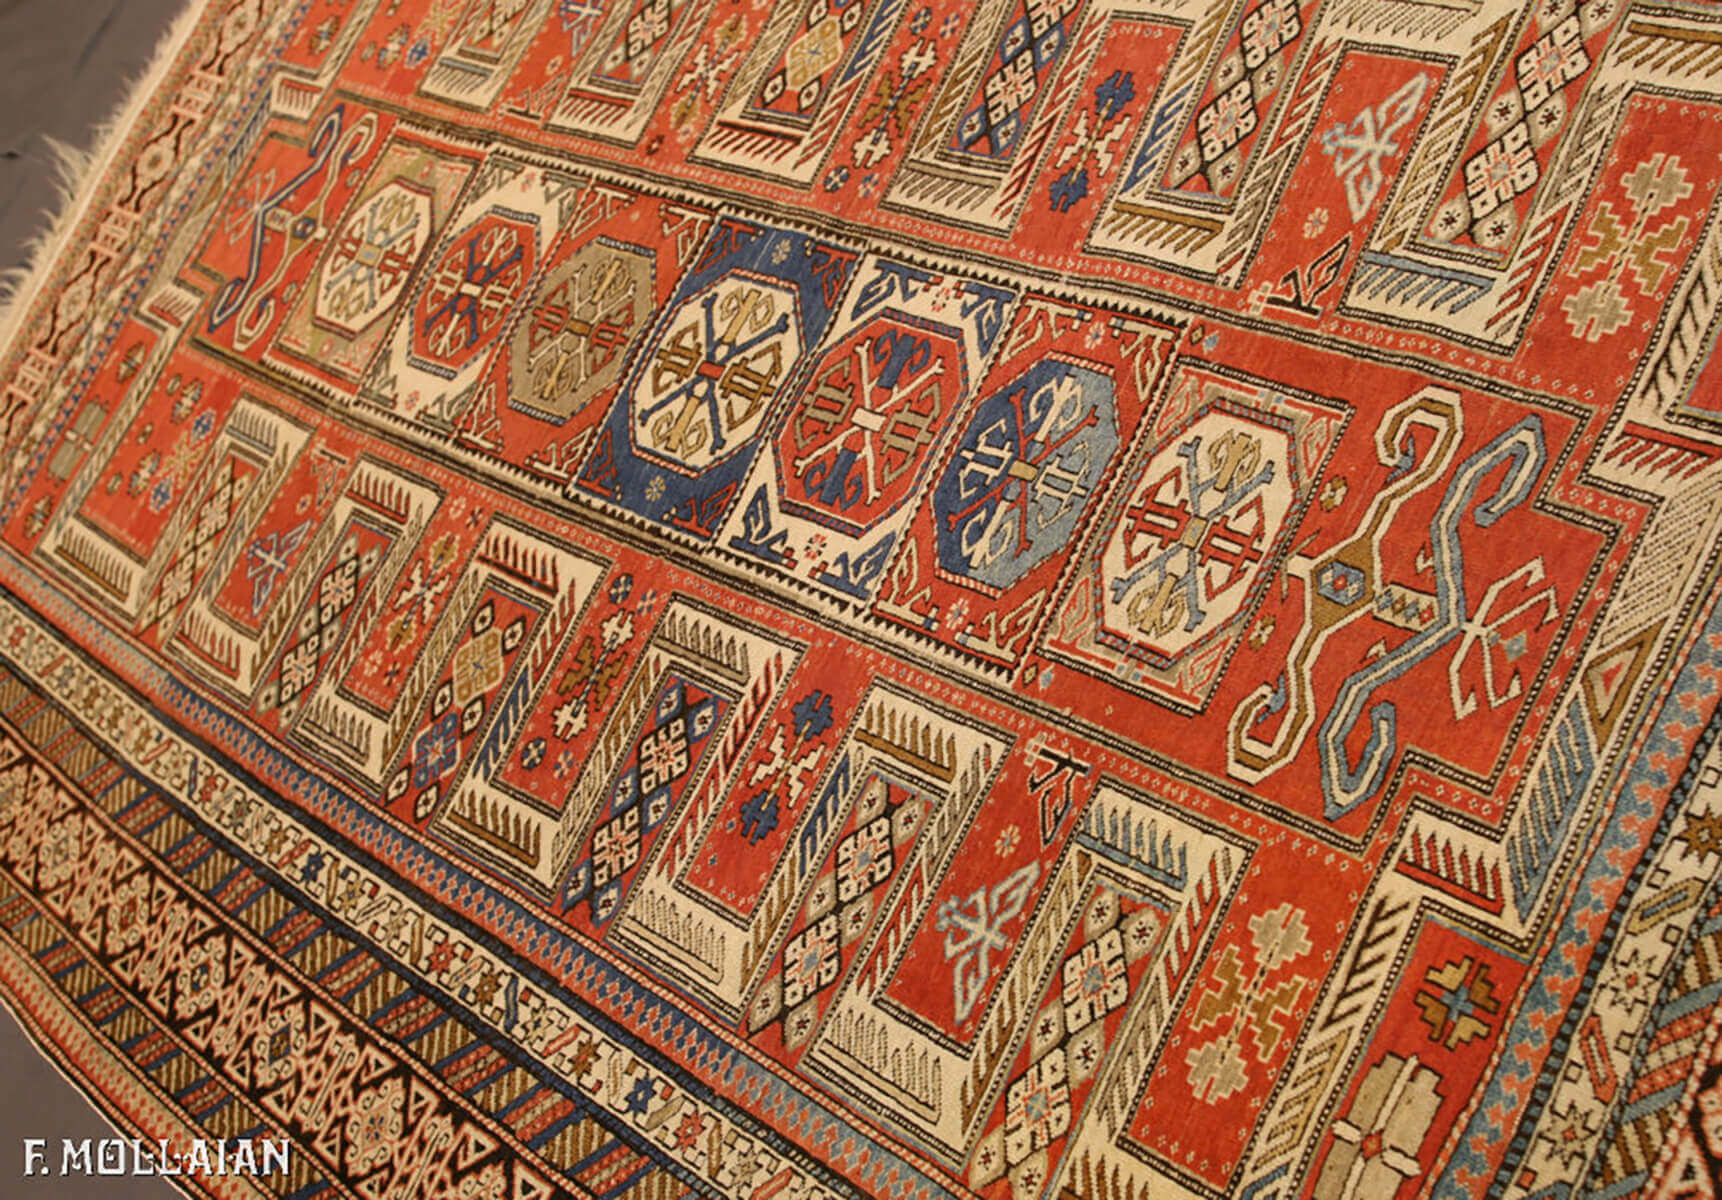 Teppich Kaukasischer Antiker Kuba (Quba) n°:63564299